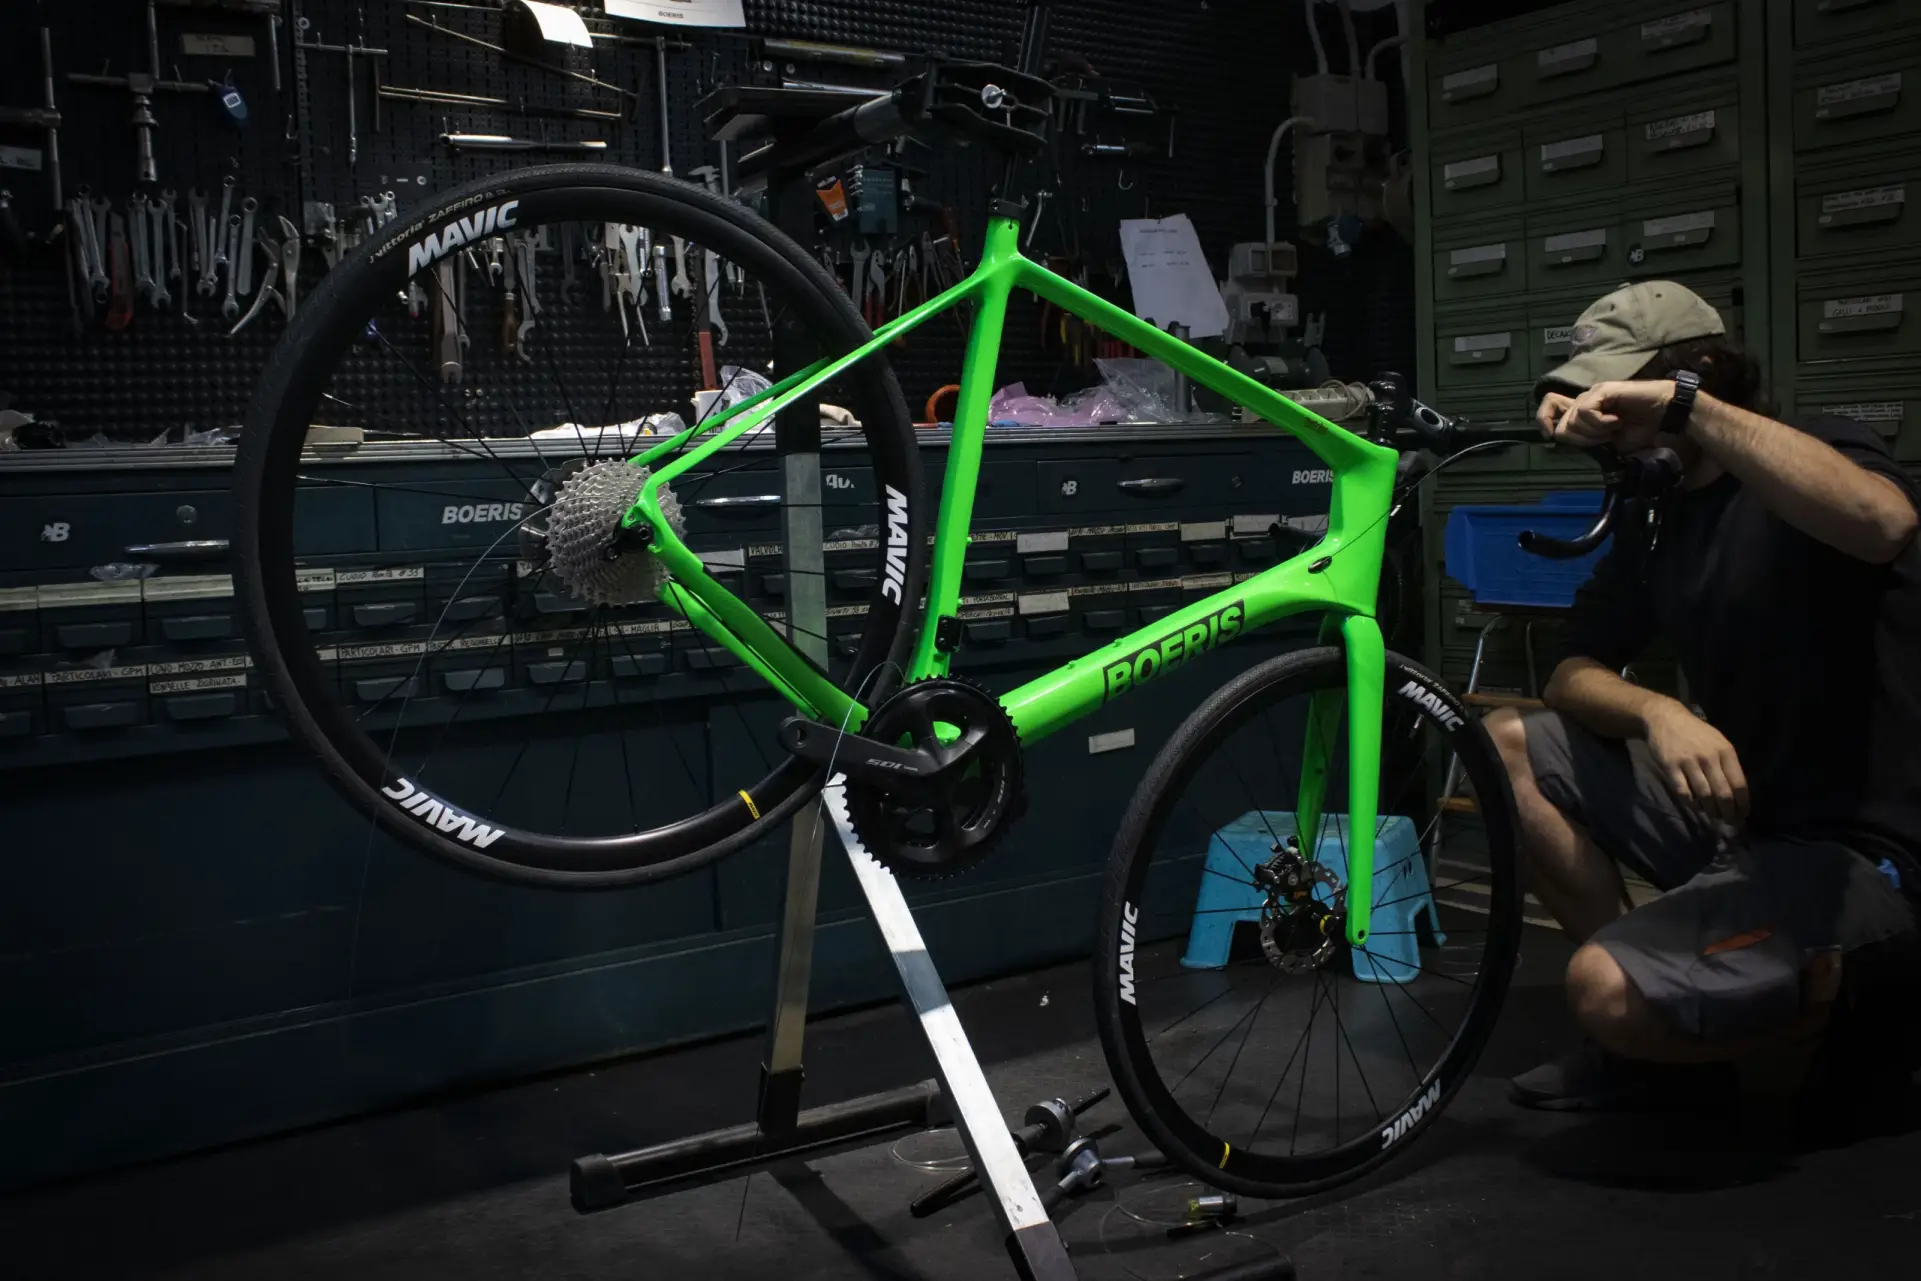 Costruzione personalizzata di una Bicicletta verde Boeris Bikes Torino bici atigianali dal 1910